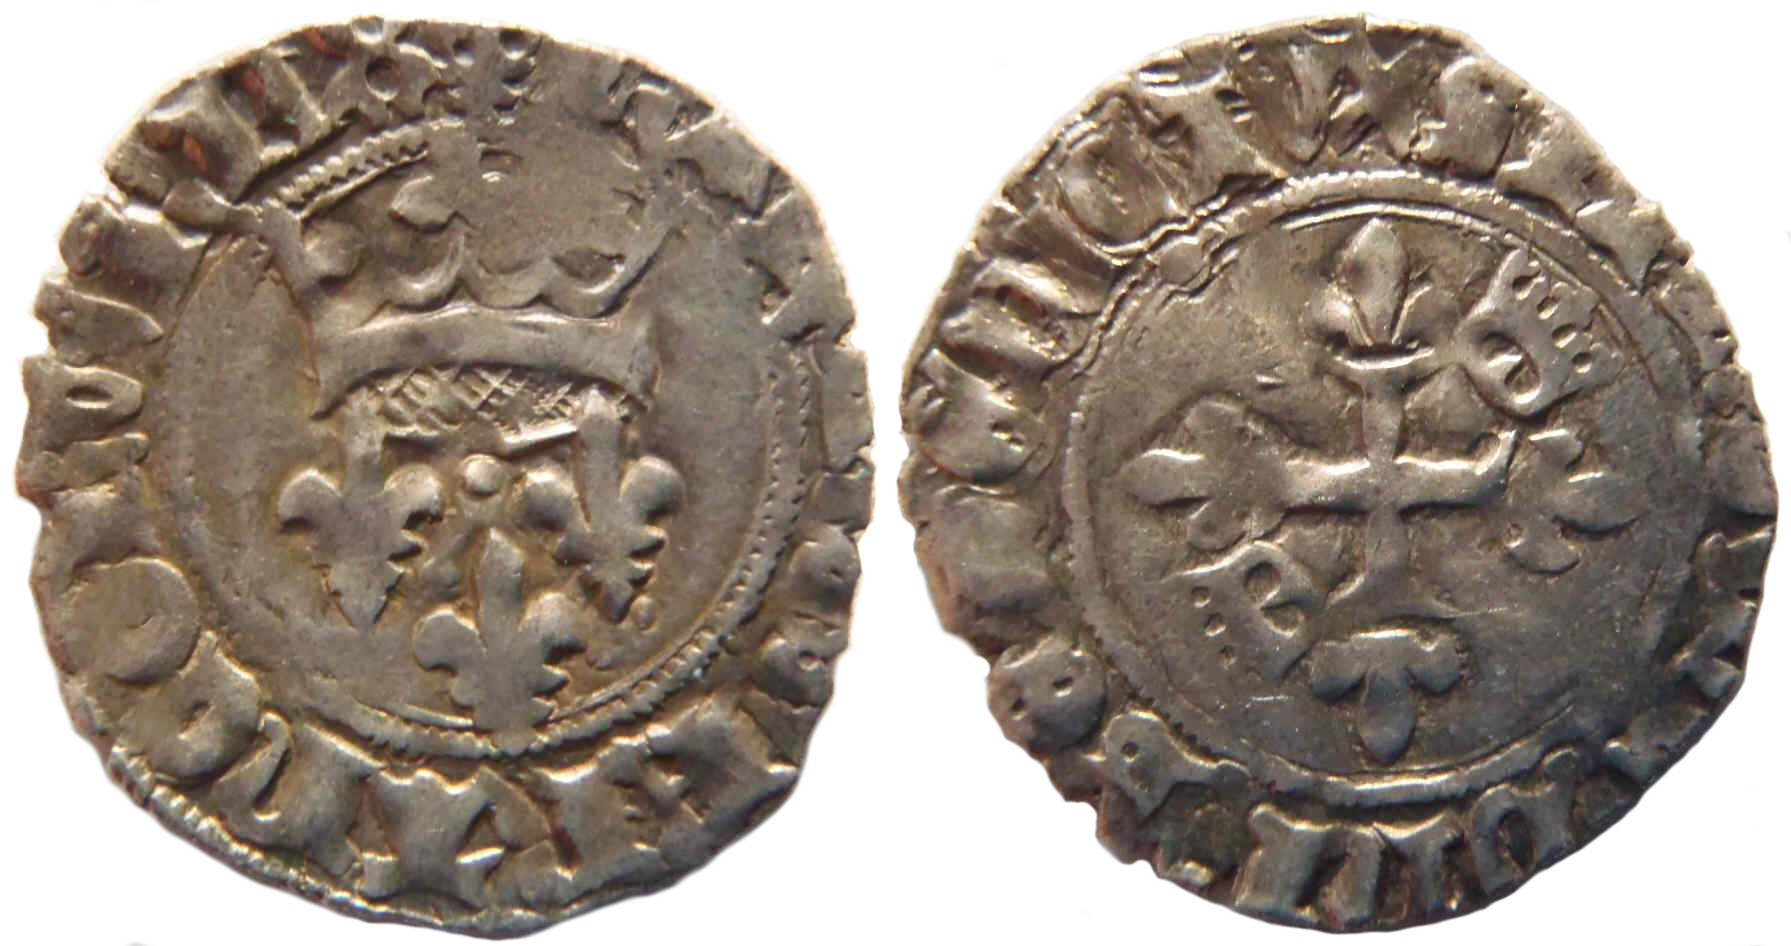 Approche typologique et chronologique des émissions de gros dits «florettes» au nom de Charles VI produites à Mâcon entre 1417 et 1421 – partie 9